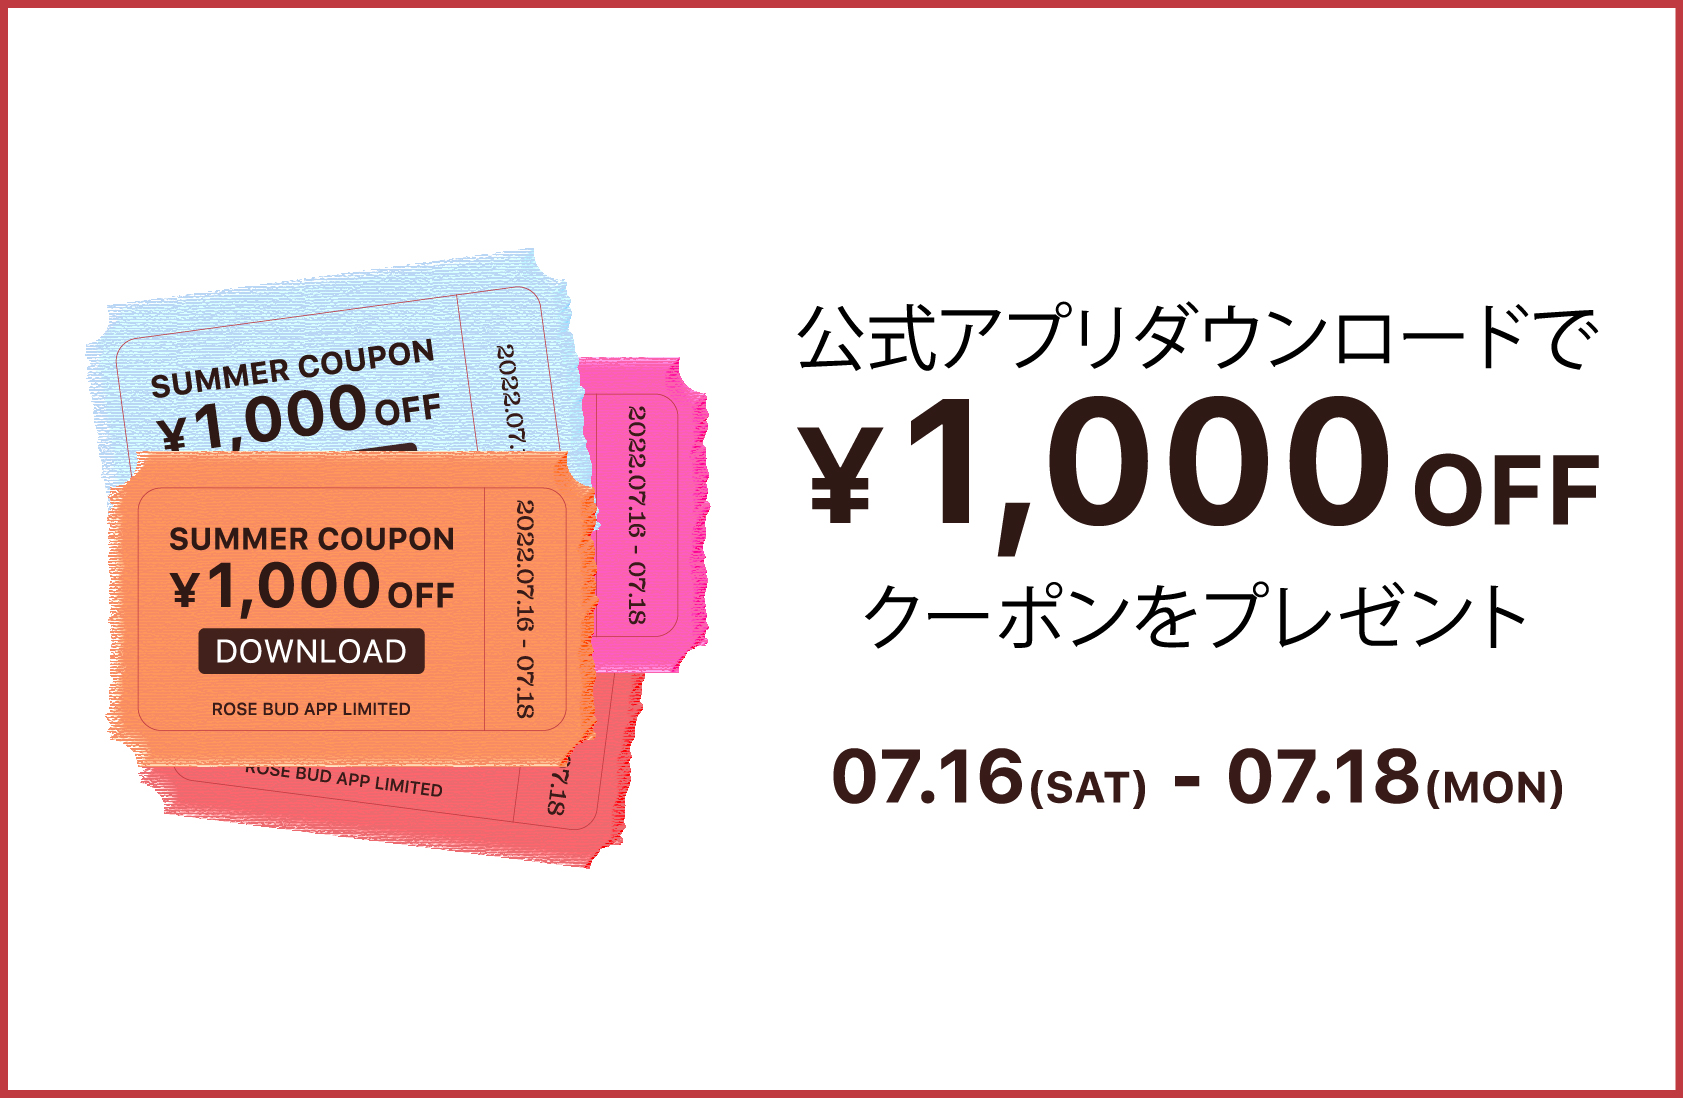 公式オンラインストアと店舗で同時開催される、公式アプリ限定1,000円OFFクーポンをプレゼント